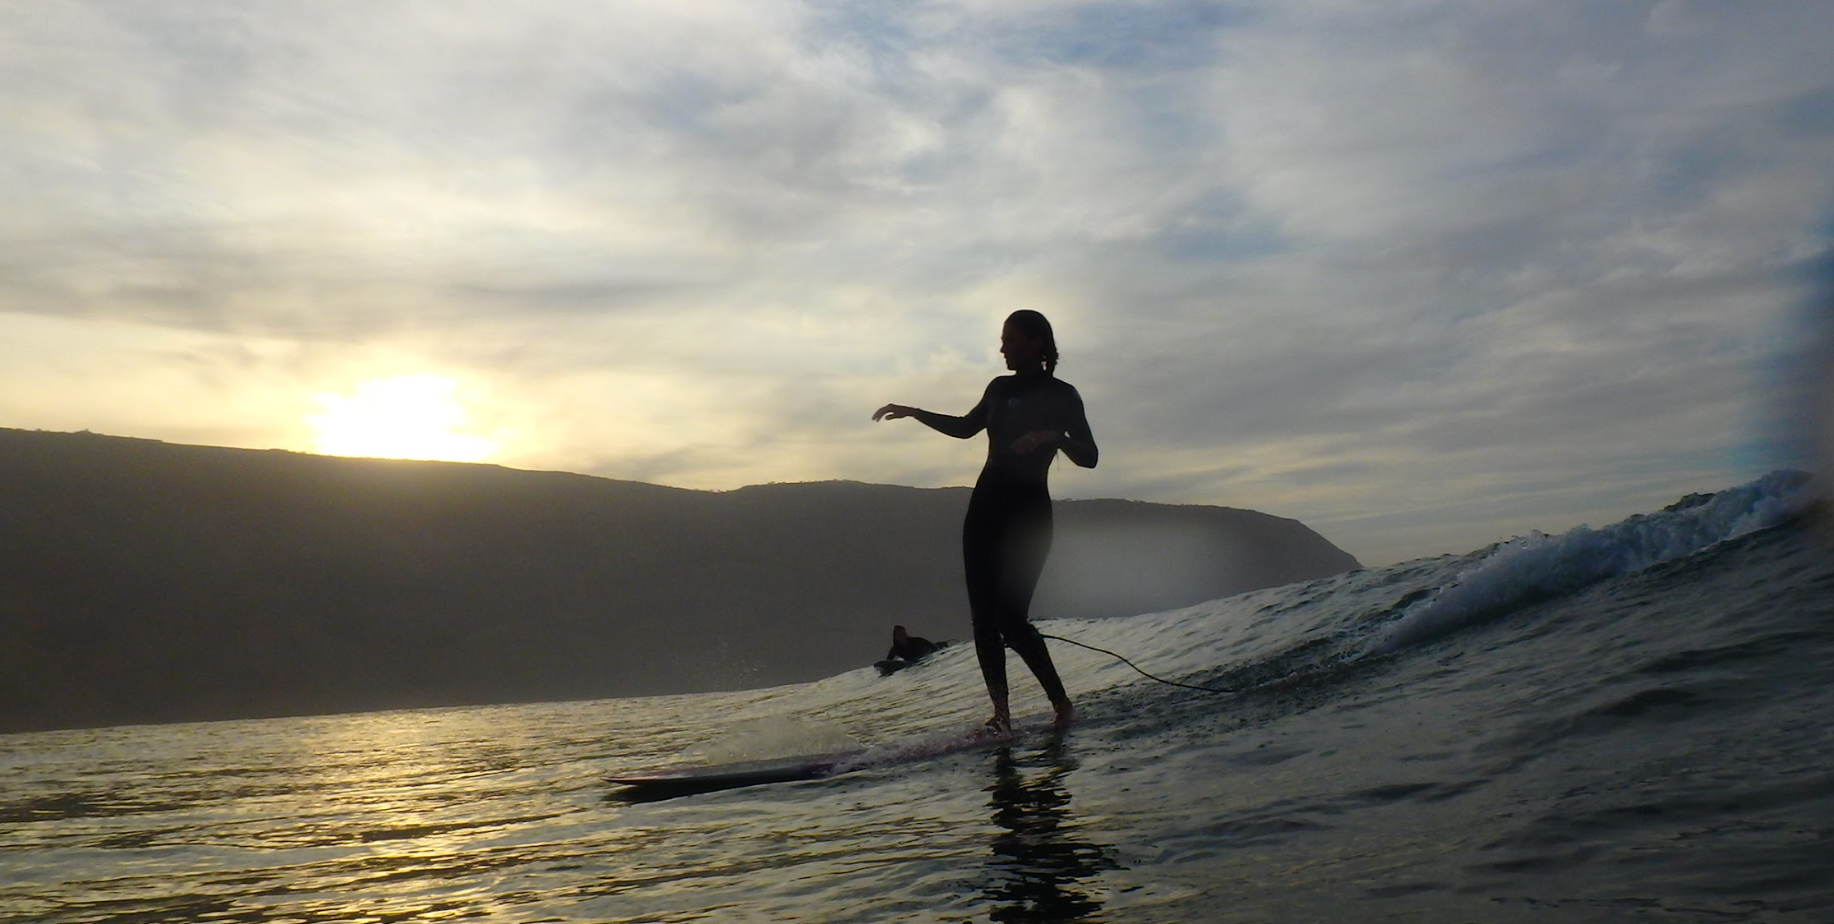 Olas Surf Experience